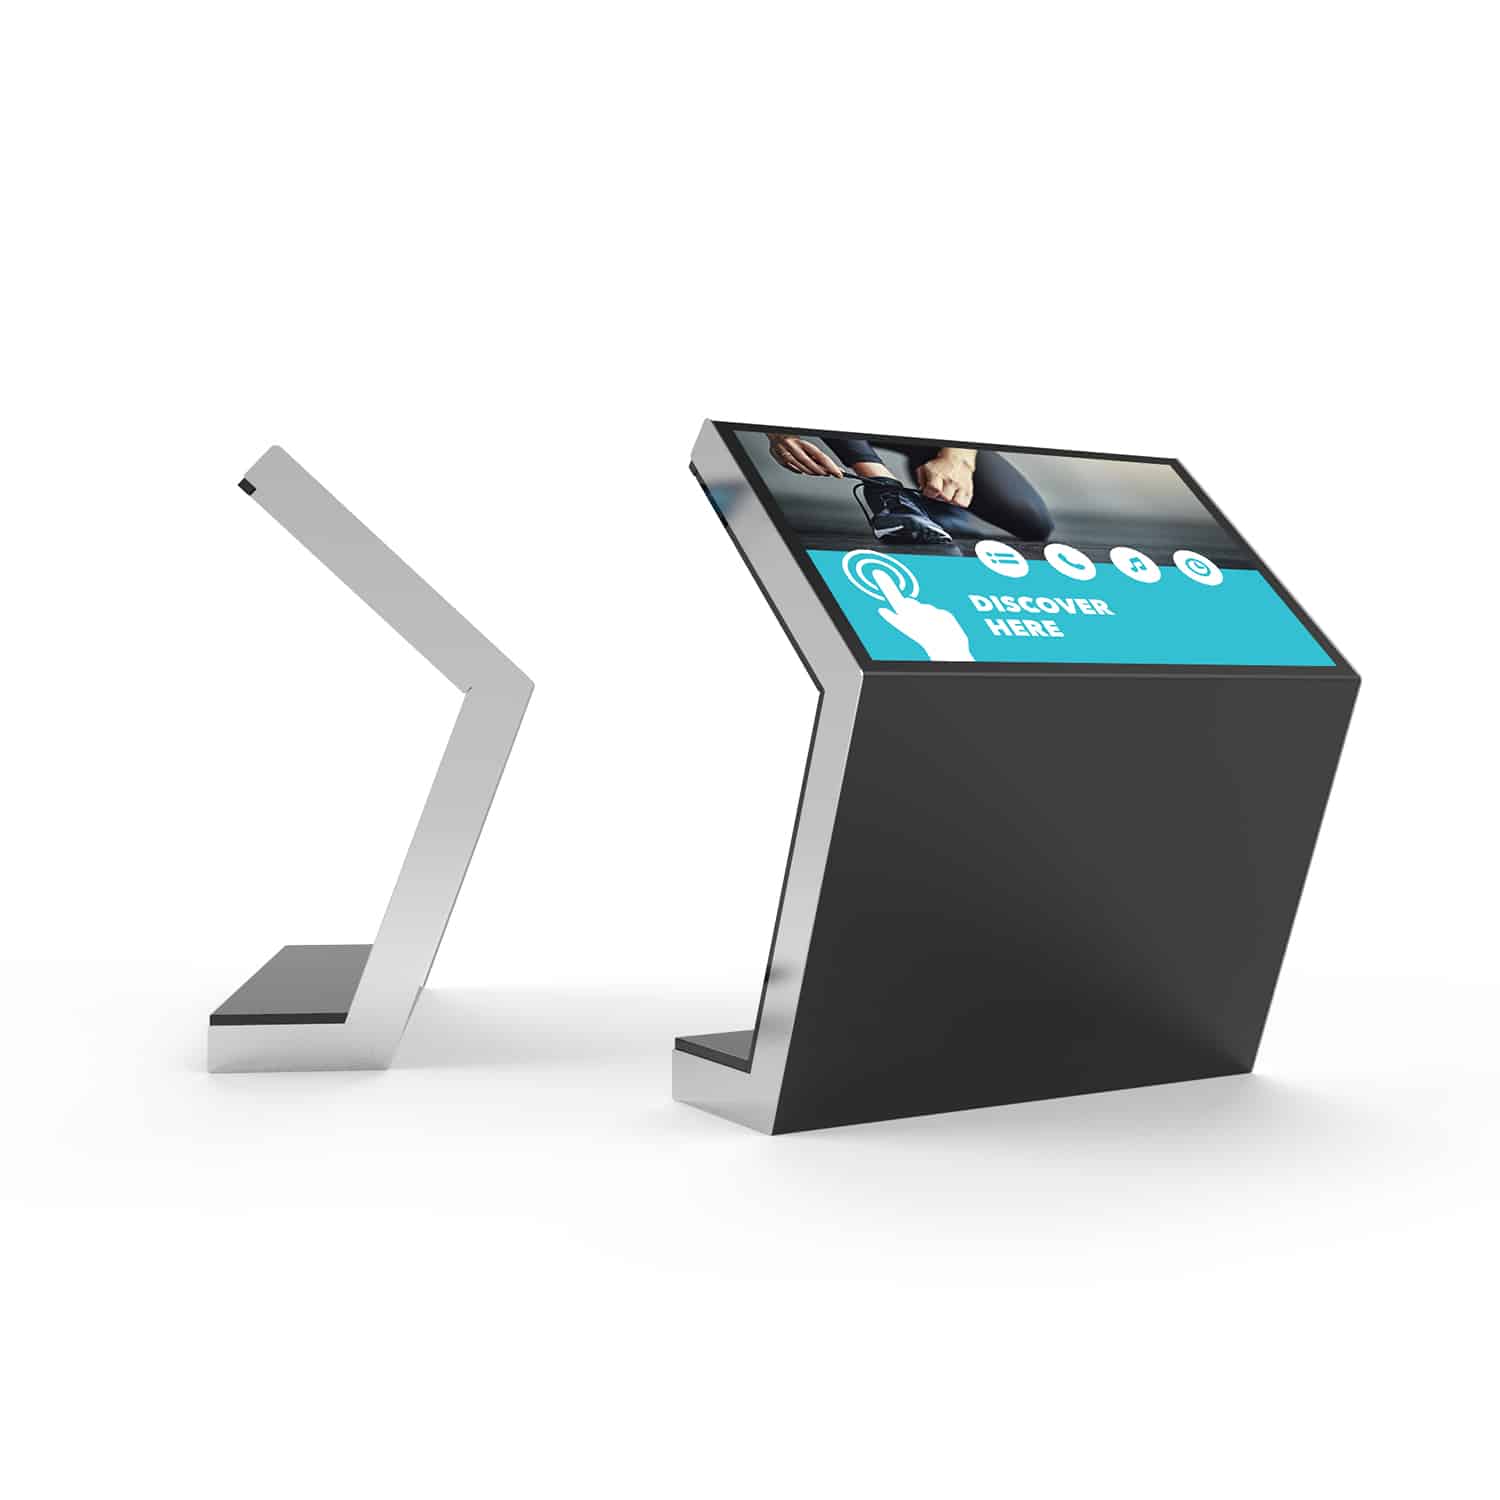 Touchscreen kiosk die op een hoek van 45 graden staat